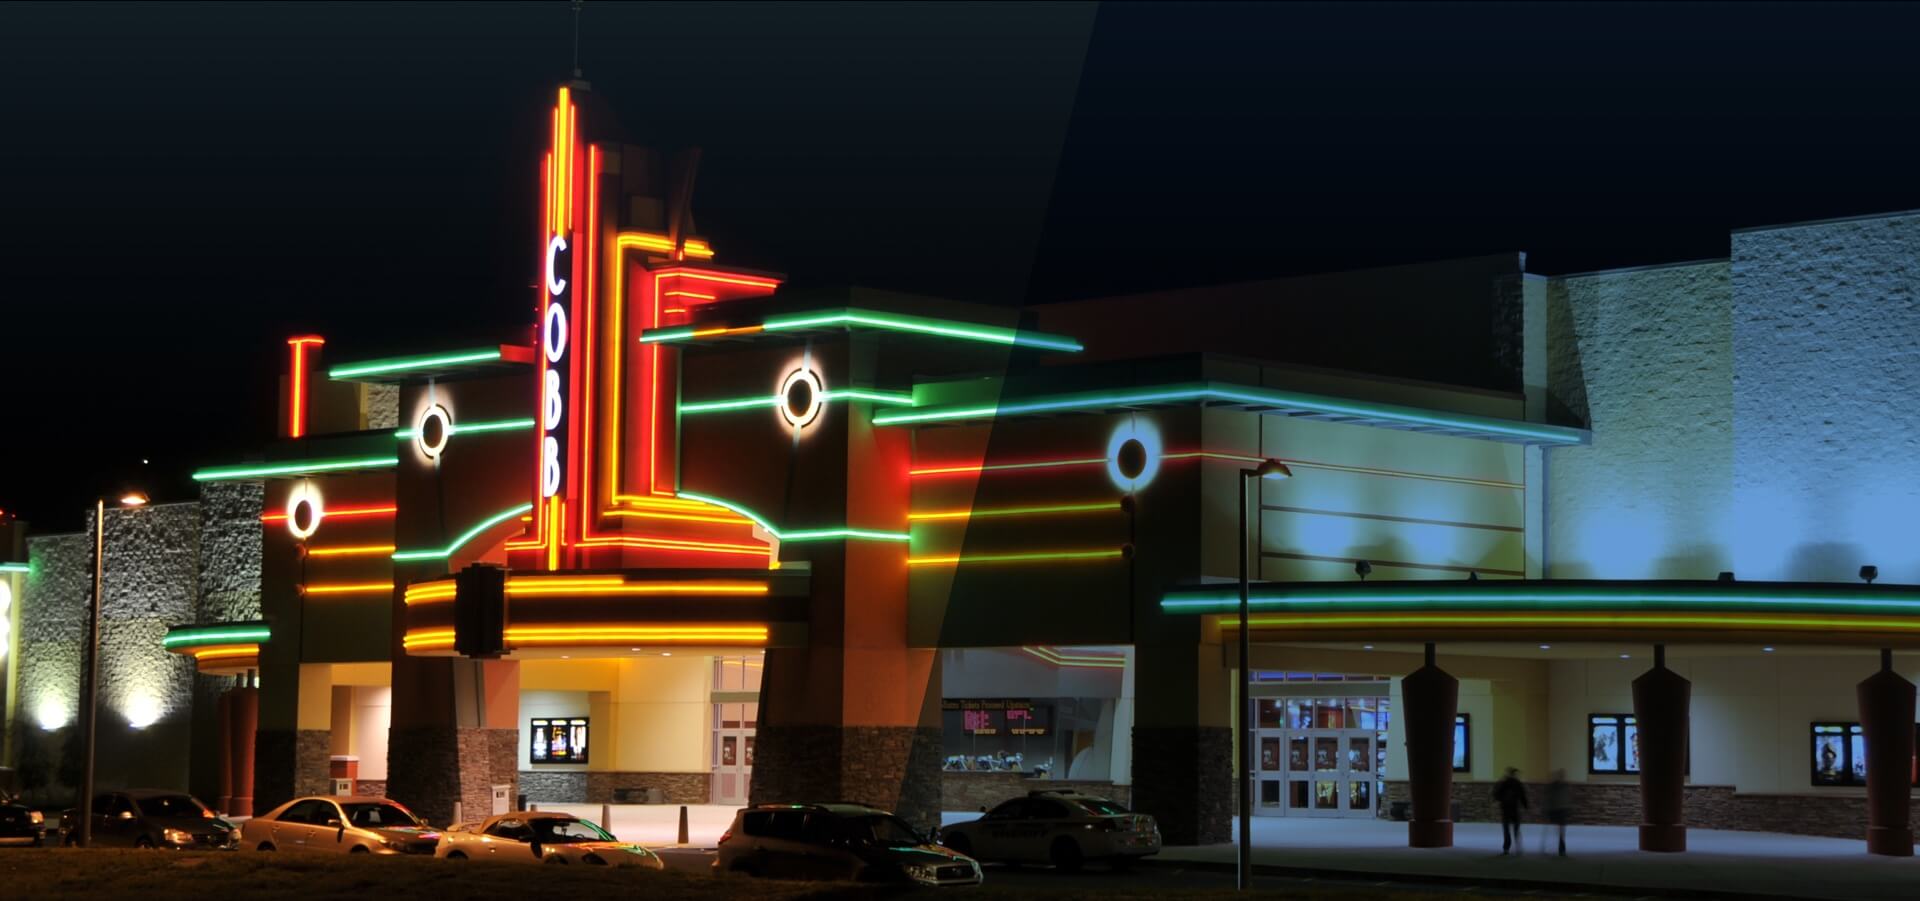 Cobb Theatres at night